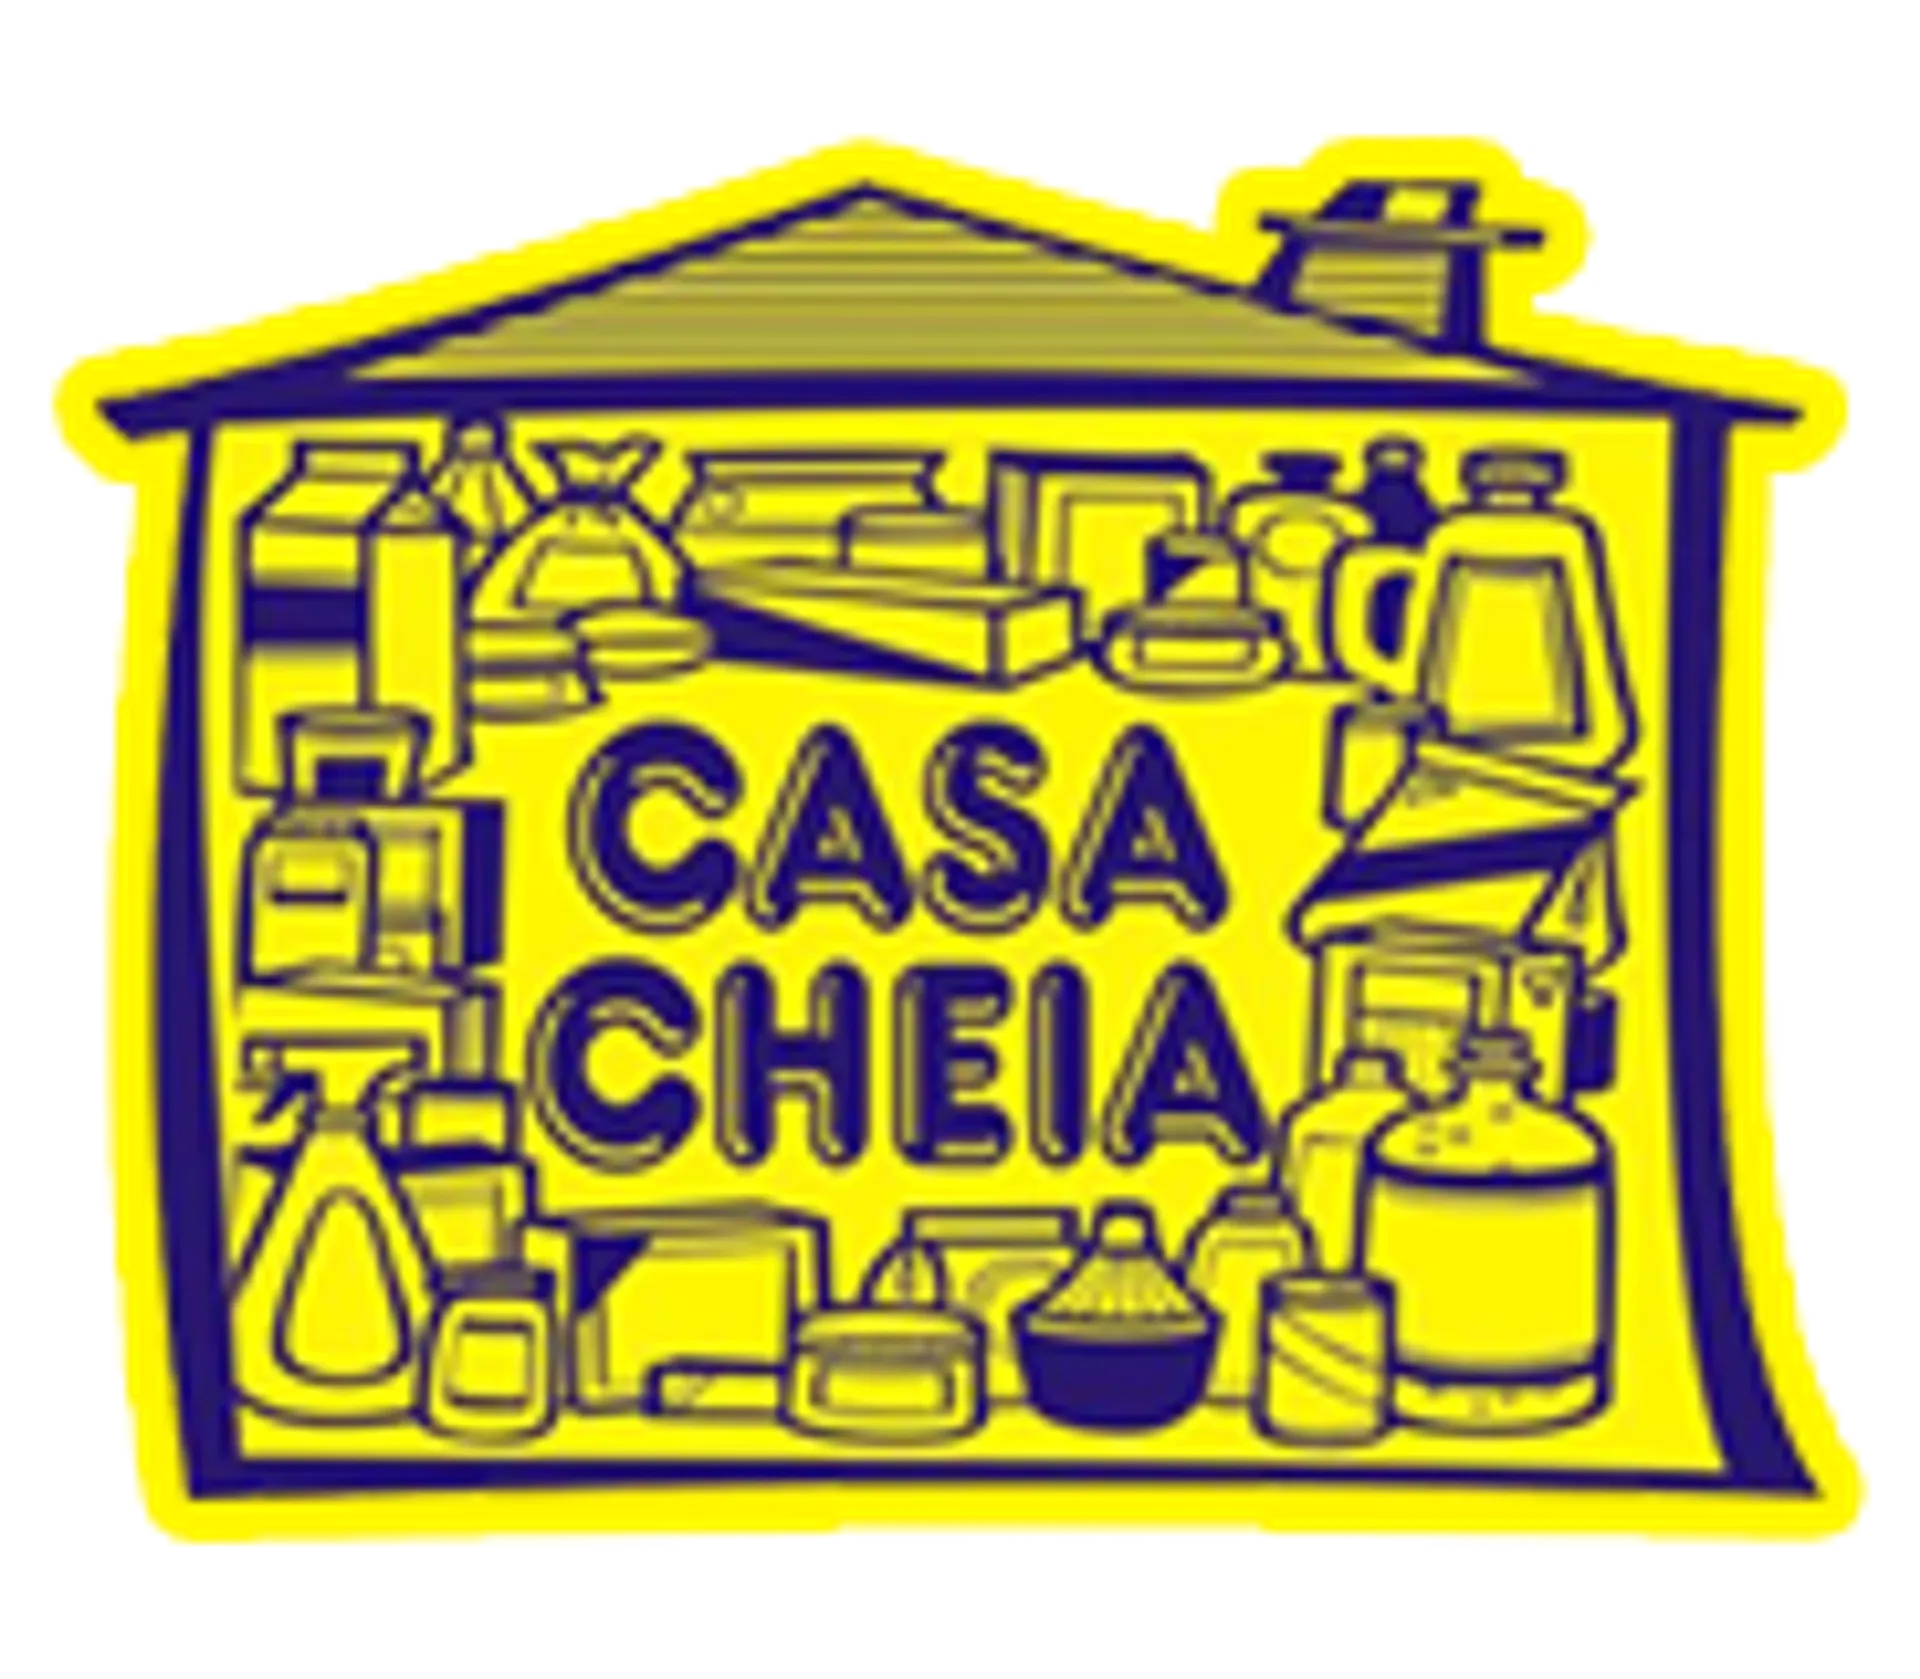 Casa Cheia logo